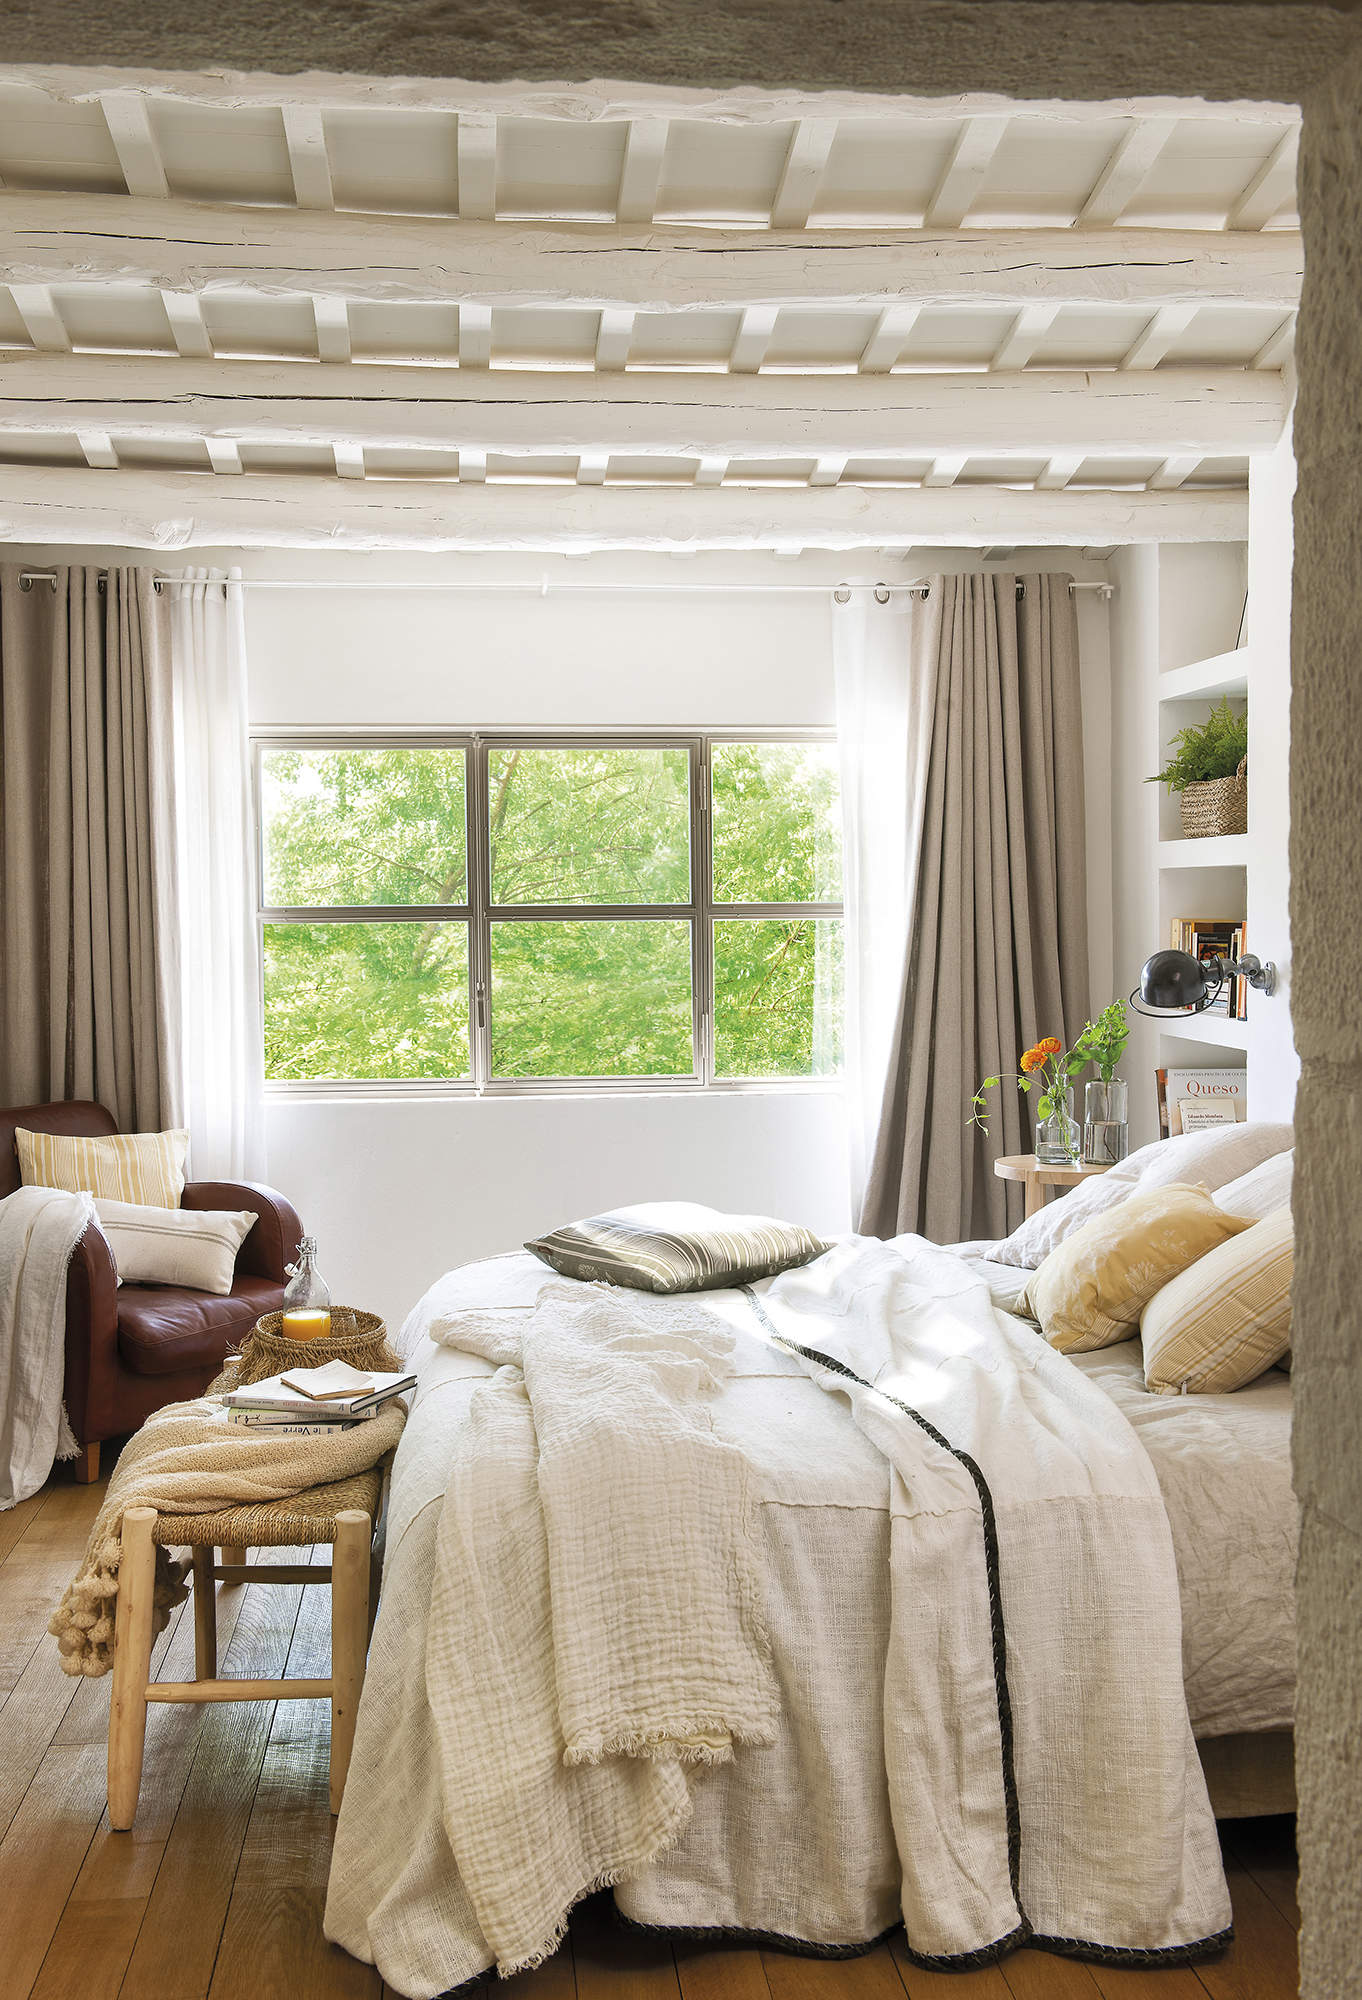 Dormitorio de estilo rústico con banco a pie de cama de La Maison y jarrones de Sacum.